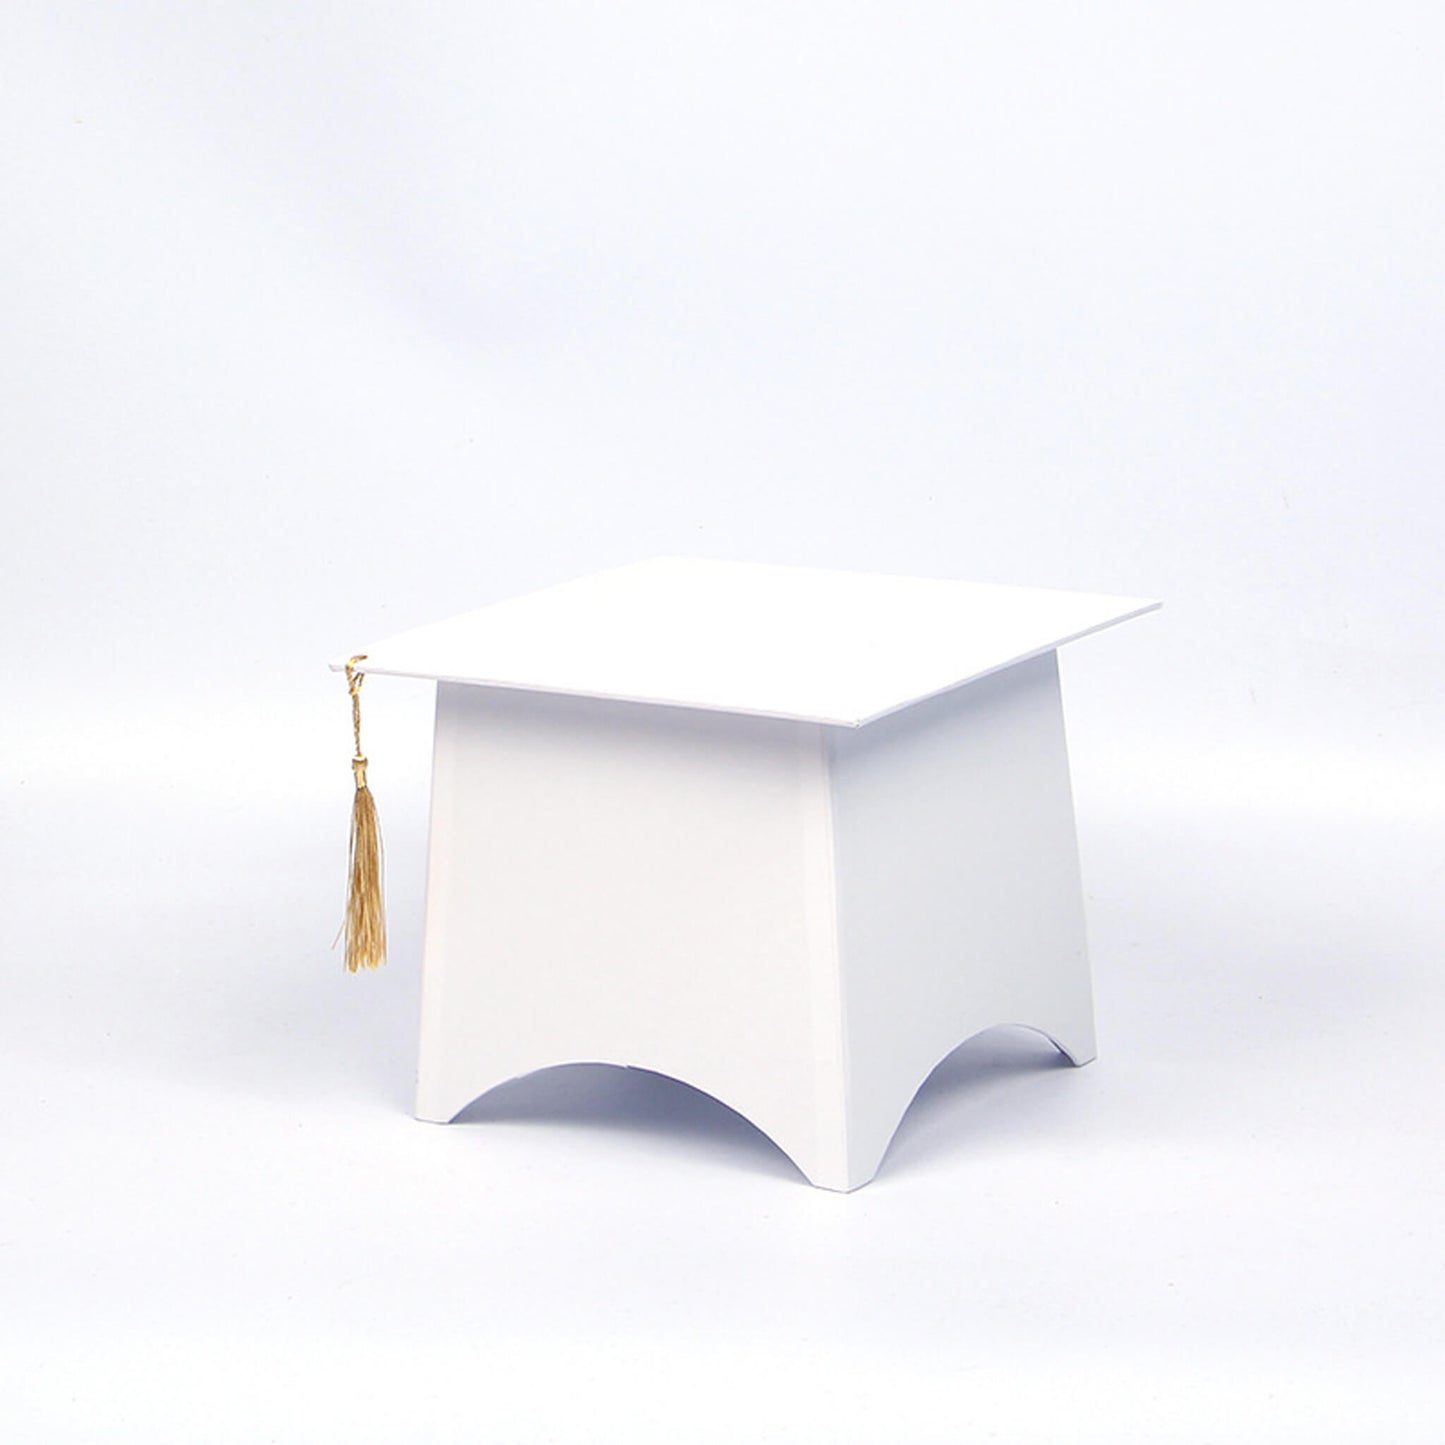 Graduation Cap Gift Box